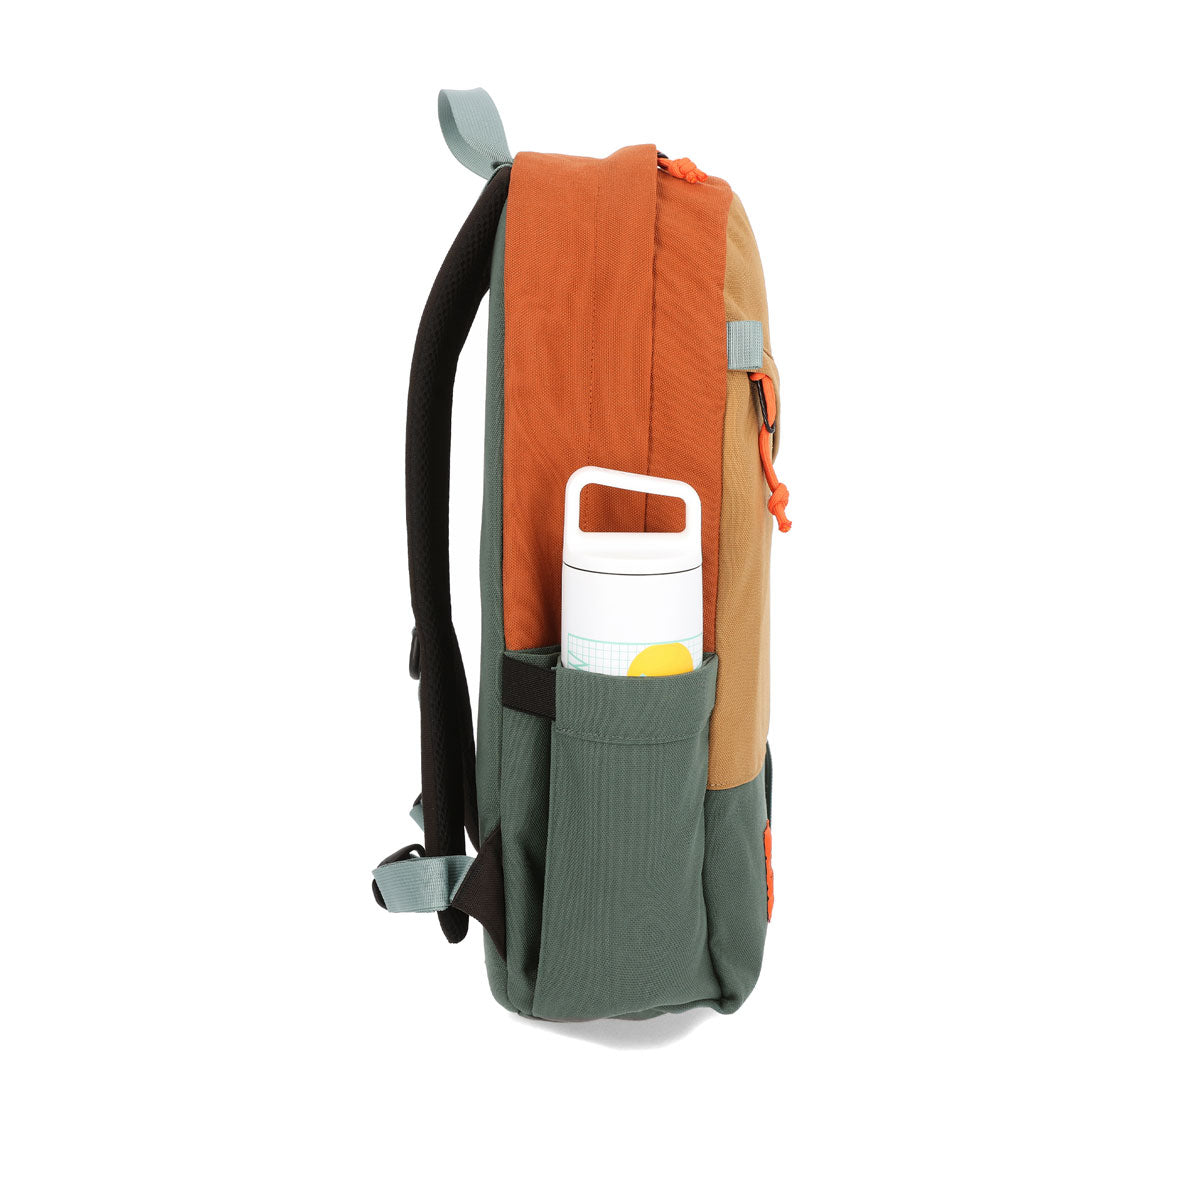 Topo Designs : Daypack Classic : Coral/Peppercorn